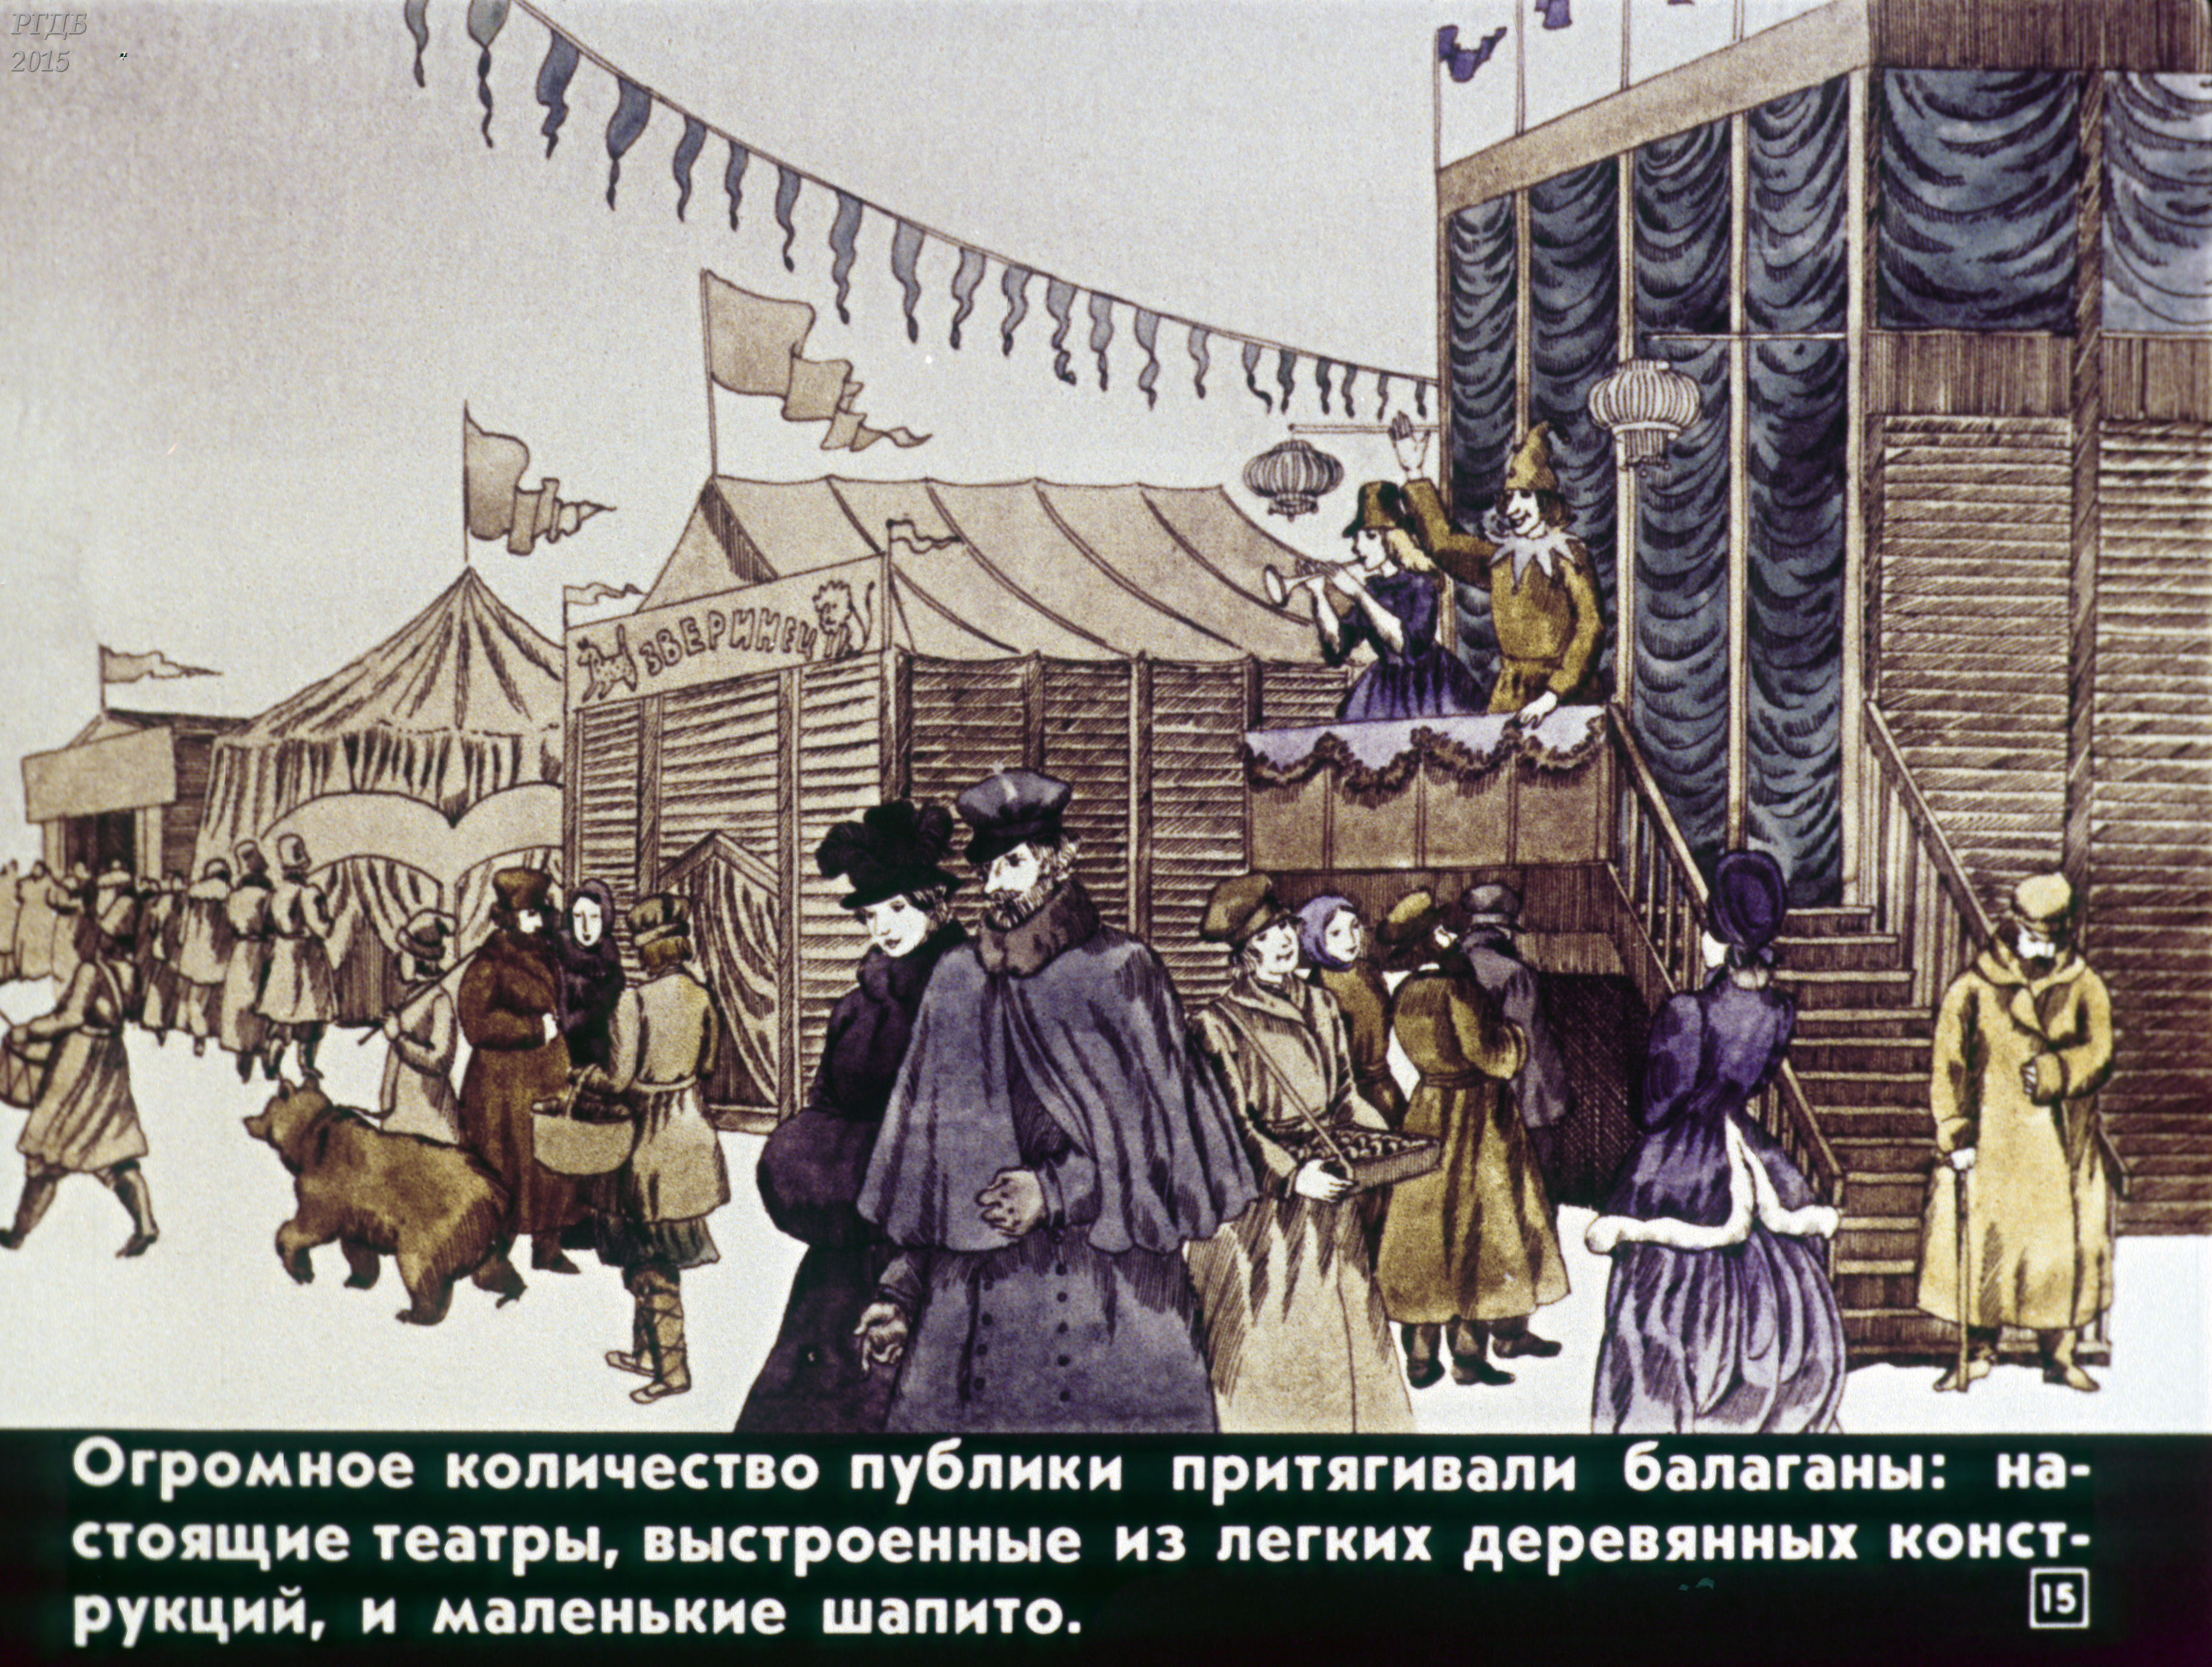 В голове моей сегодня бала балаган. Театр Балаган. Балаганы на Руси. Балаган 19 век. Русские народные городские праздники увеселения и зрелища.